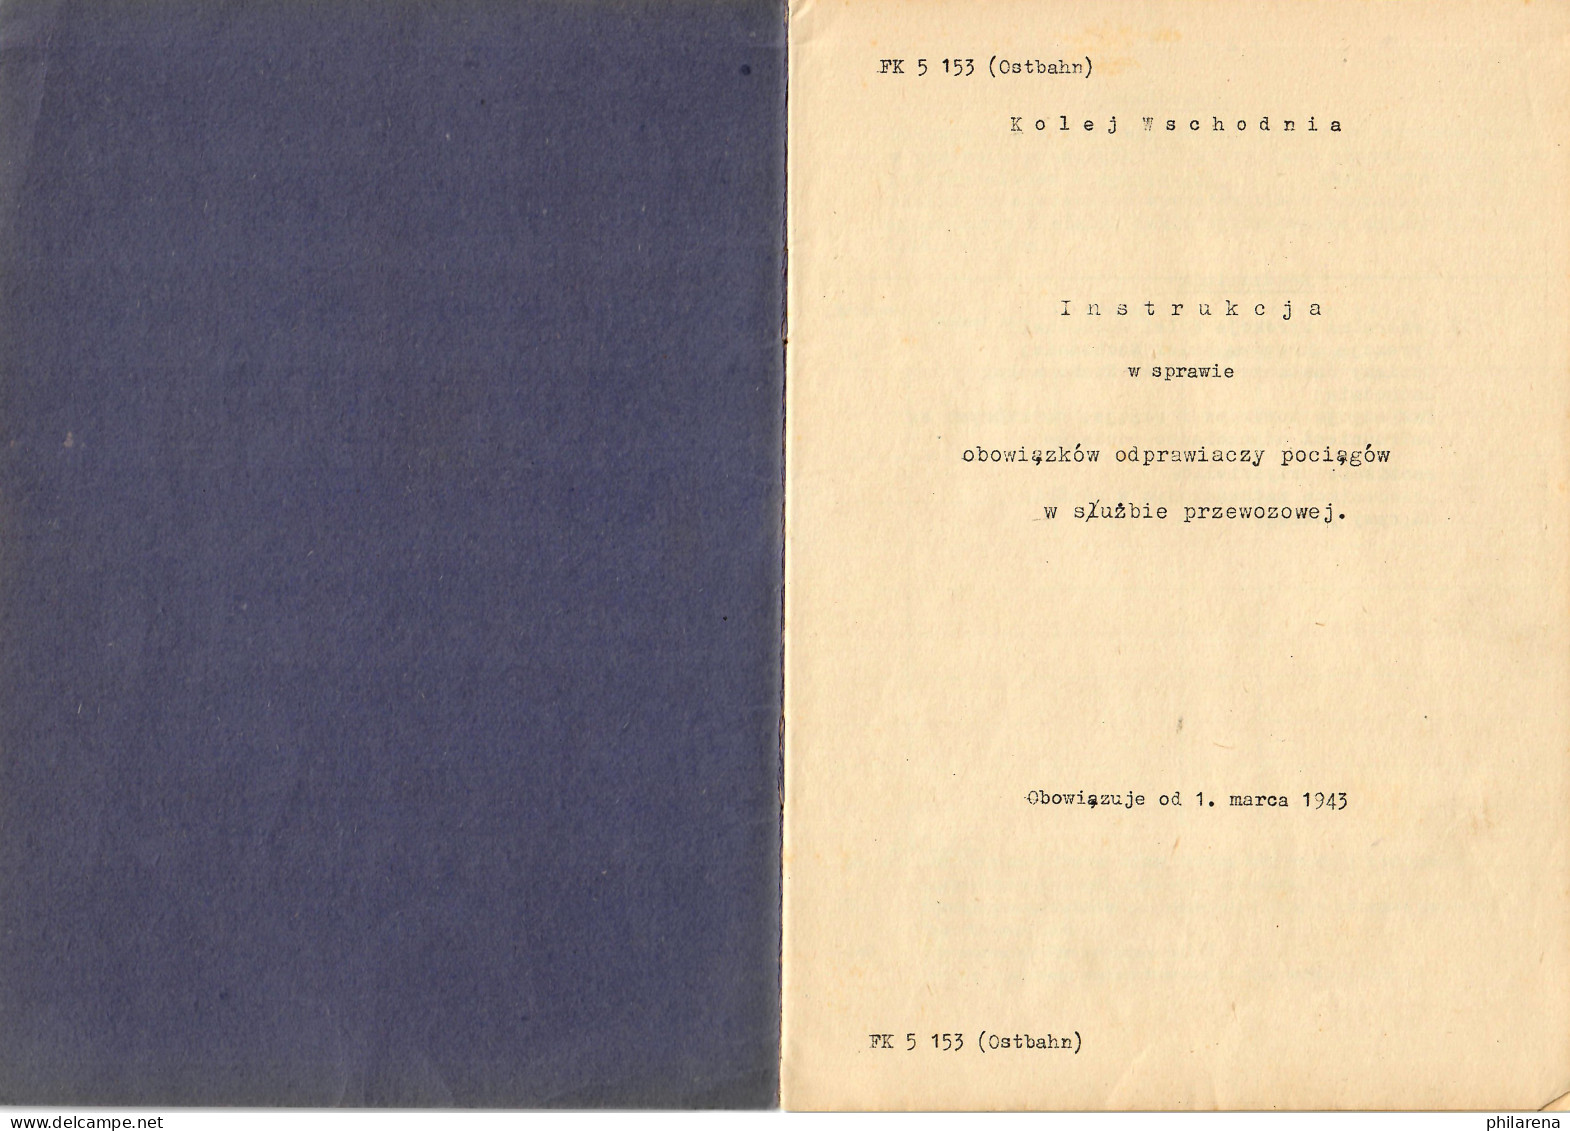 Instrukcja W Sprawie Obowiazkow Odprawiaczy Pociagow W Sluzbie Przewozowej 1943 - Libros Antiguos Y De Colección